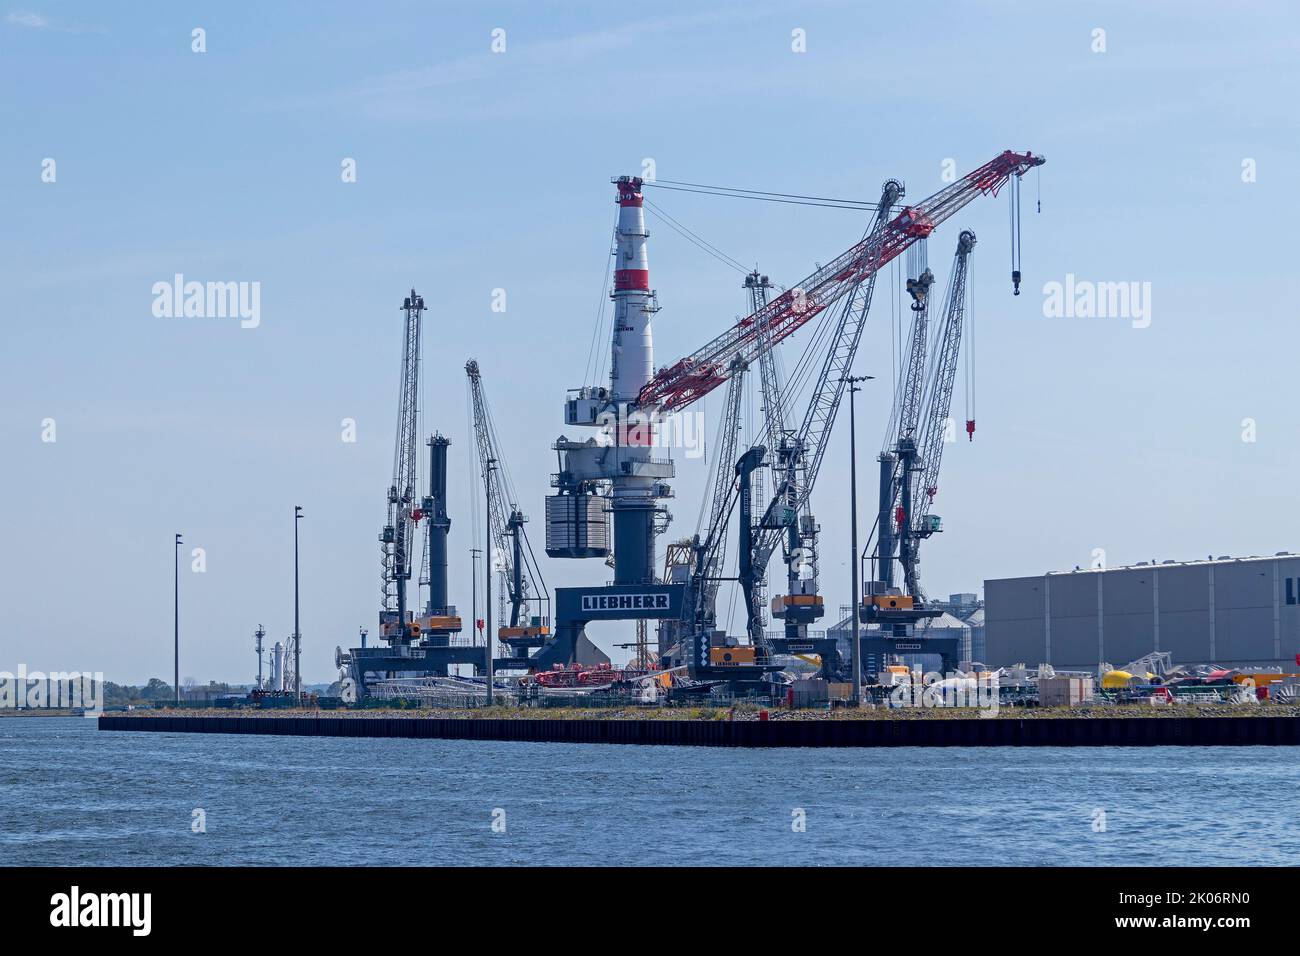 Grúas en el puerto, Warnemünde, Rostock, Mecklemburgo-Pomerania Occidental, Alemania Foto de stock